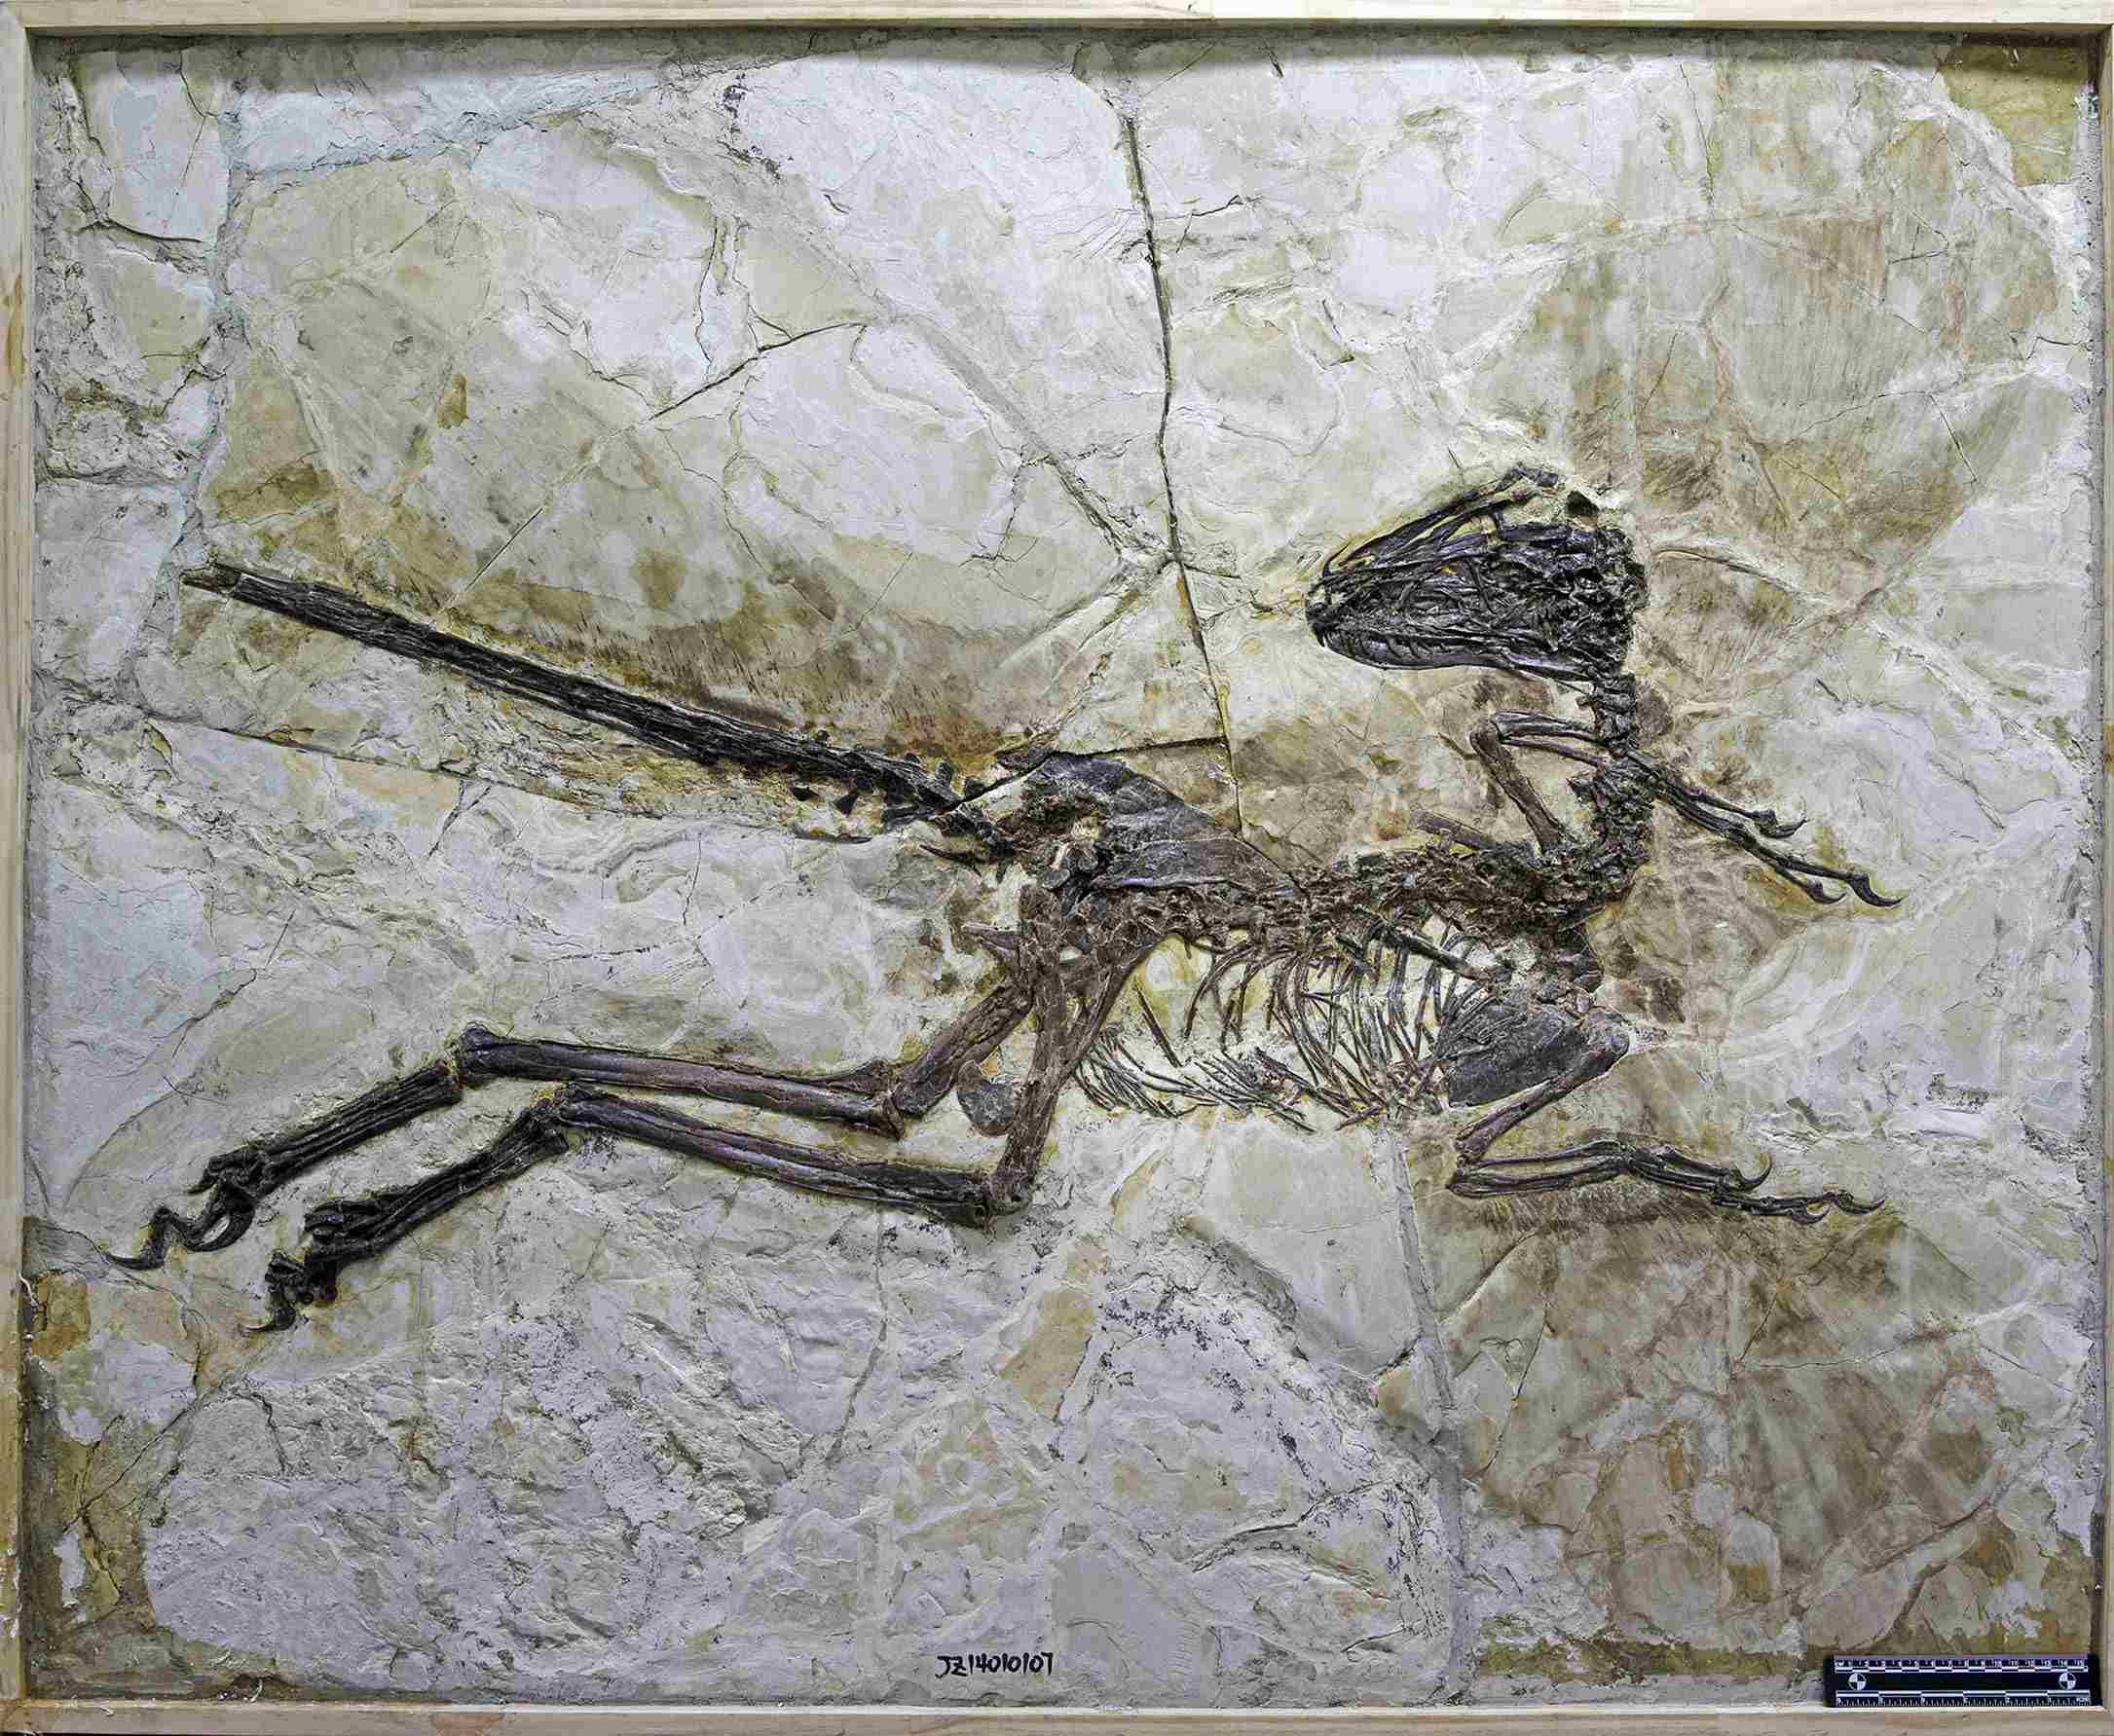 Forskare har precis hittat velociraptors fjäderklädda kinesiska kusin 2